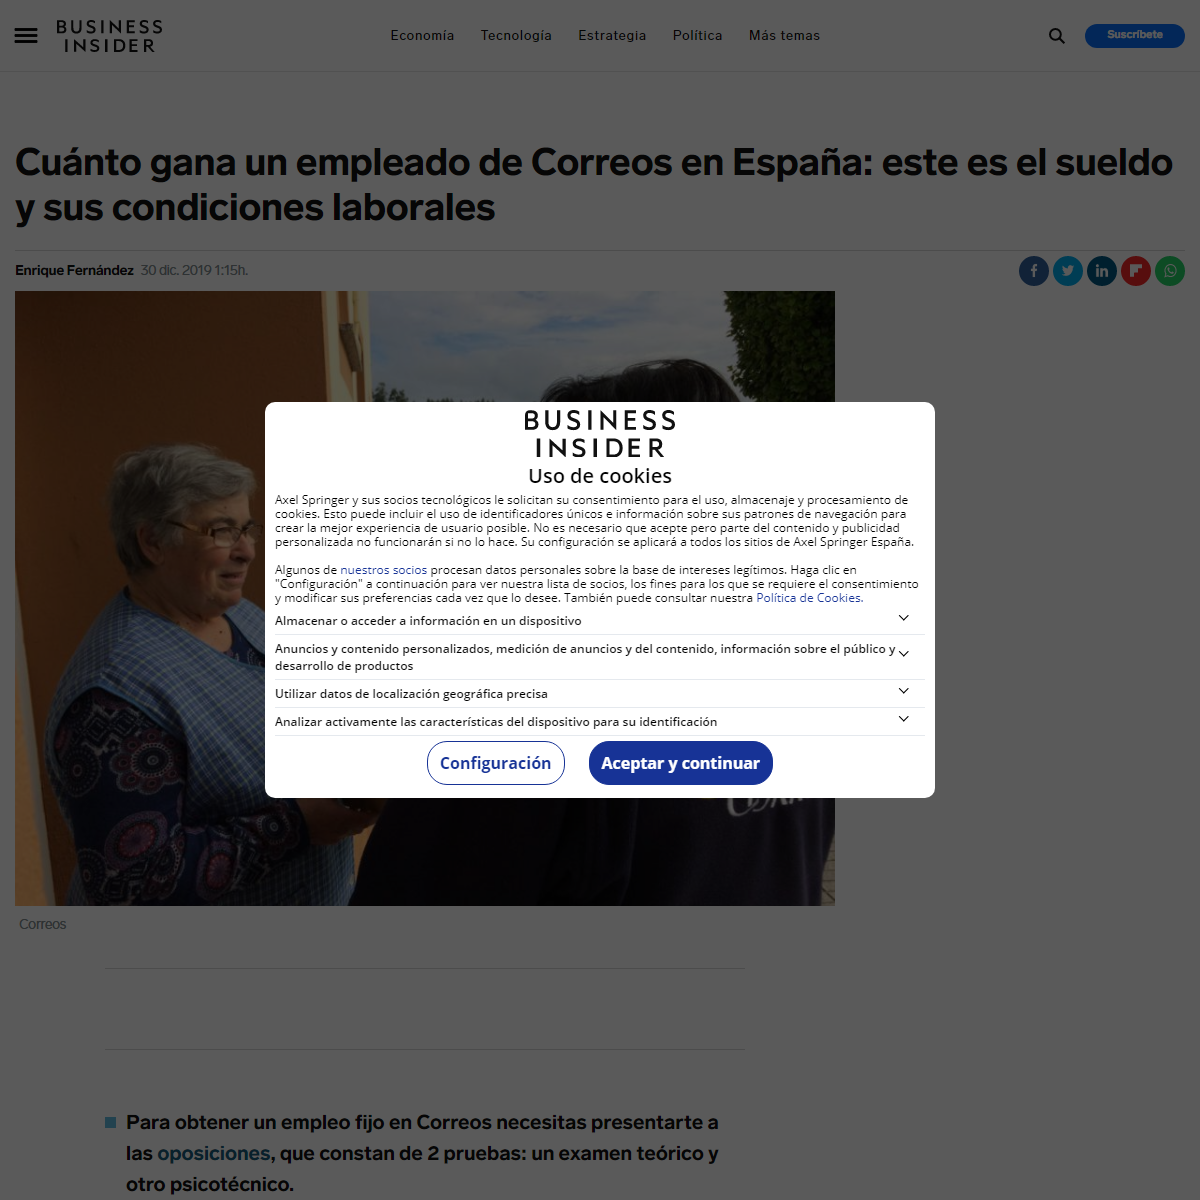 A complete backup of https://www.businessinsider.es/cuanto-gana-empleado-correos-espana-sueldo-condiciones-553308